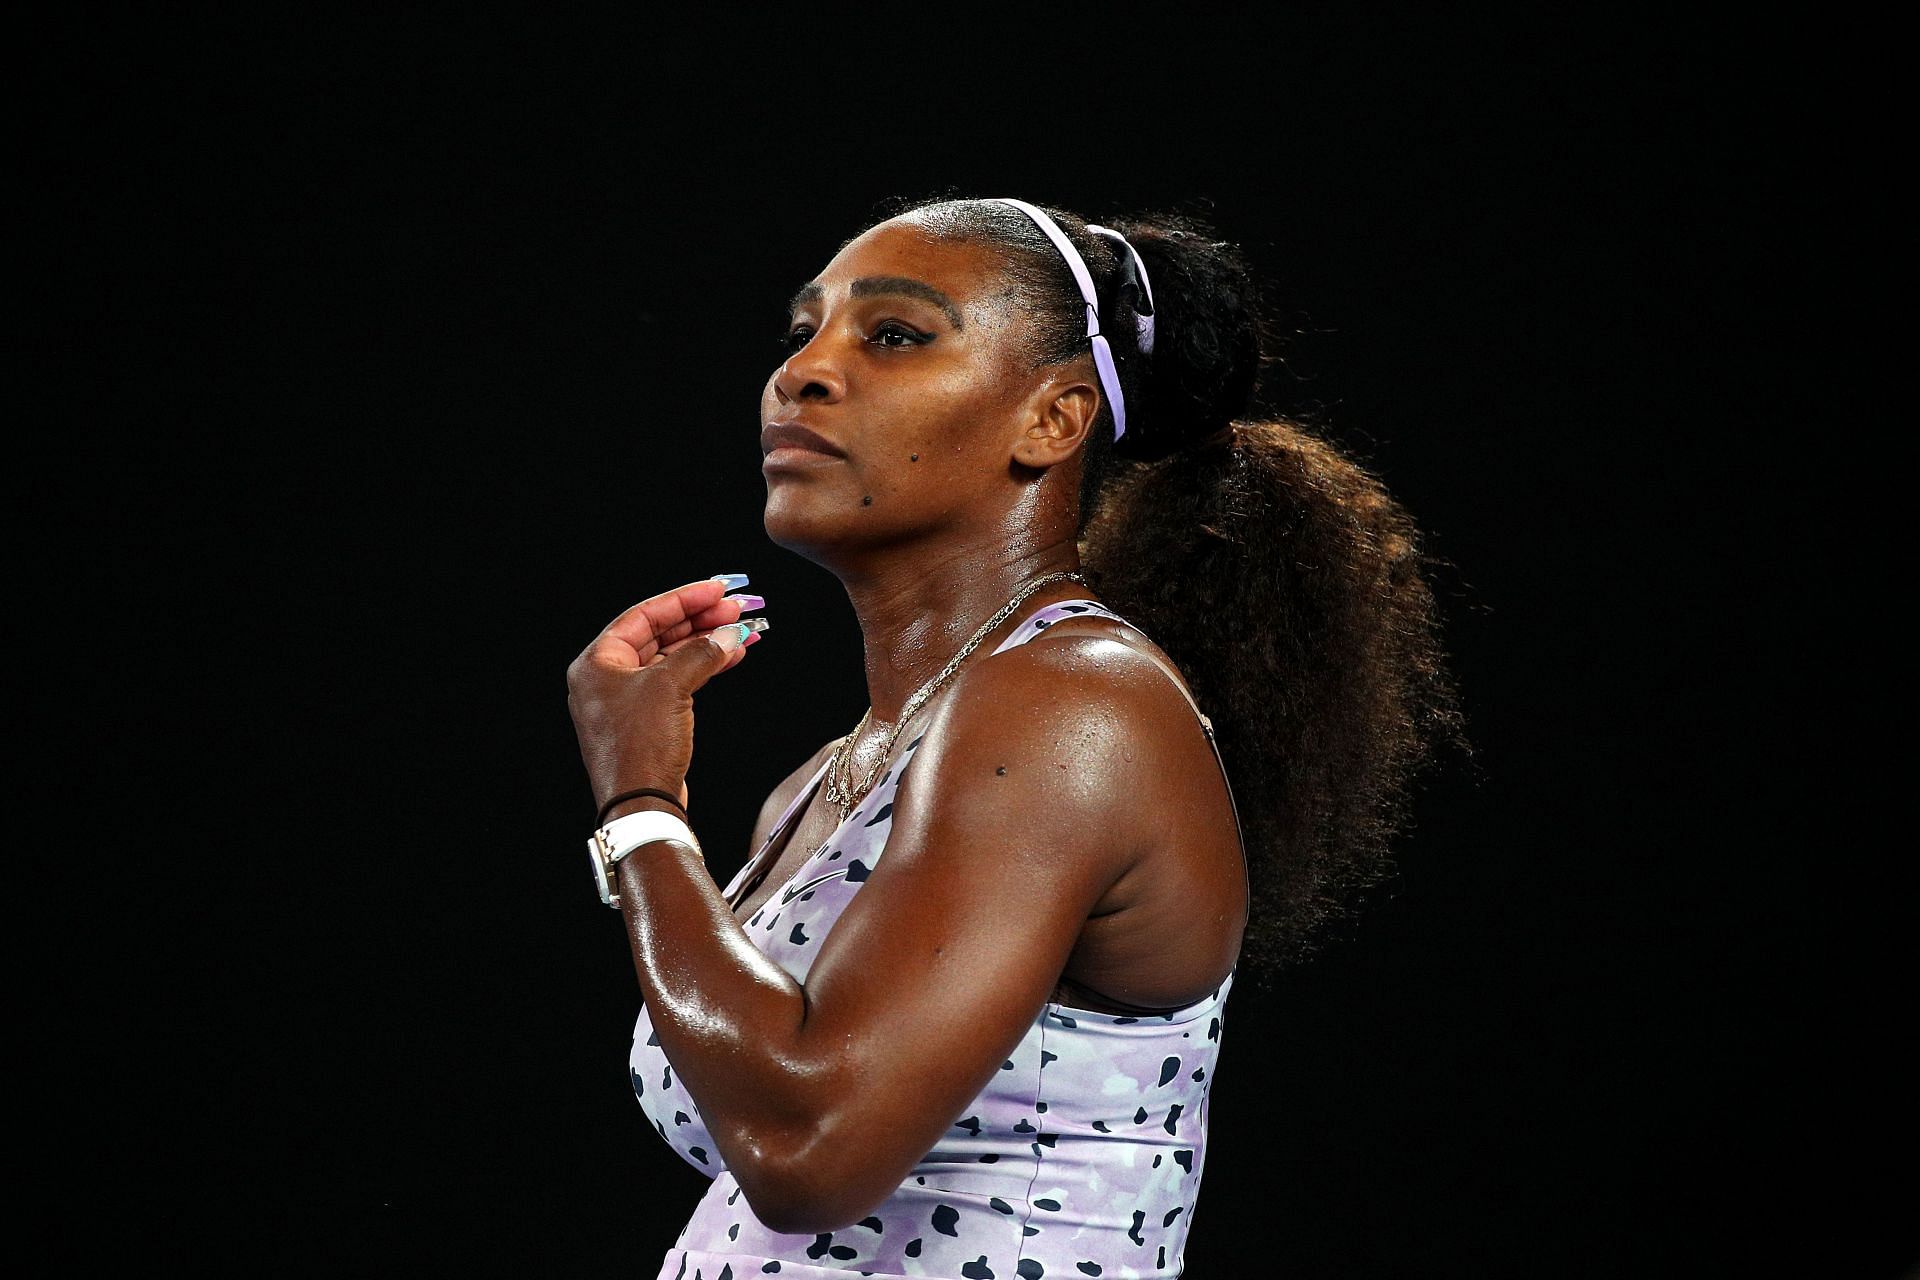 Serena Williams has transcended sports, according to Nike Vice President Tanya Hvizdak